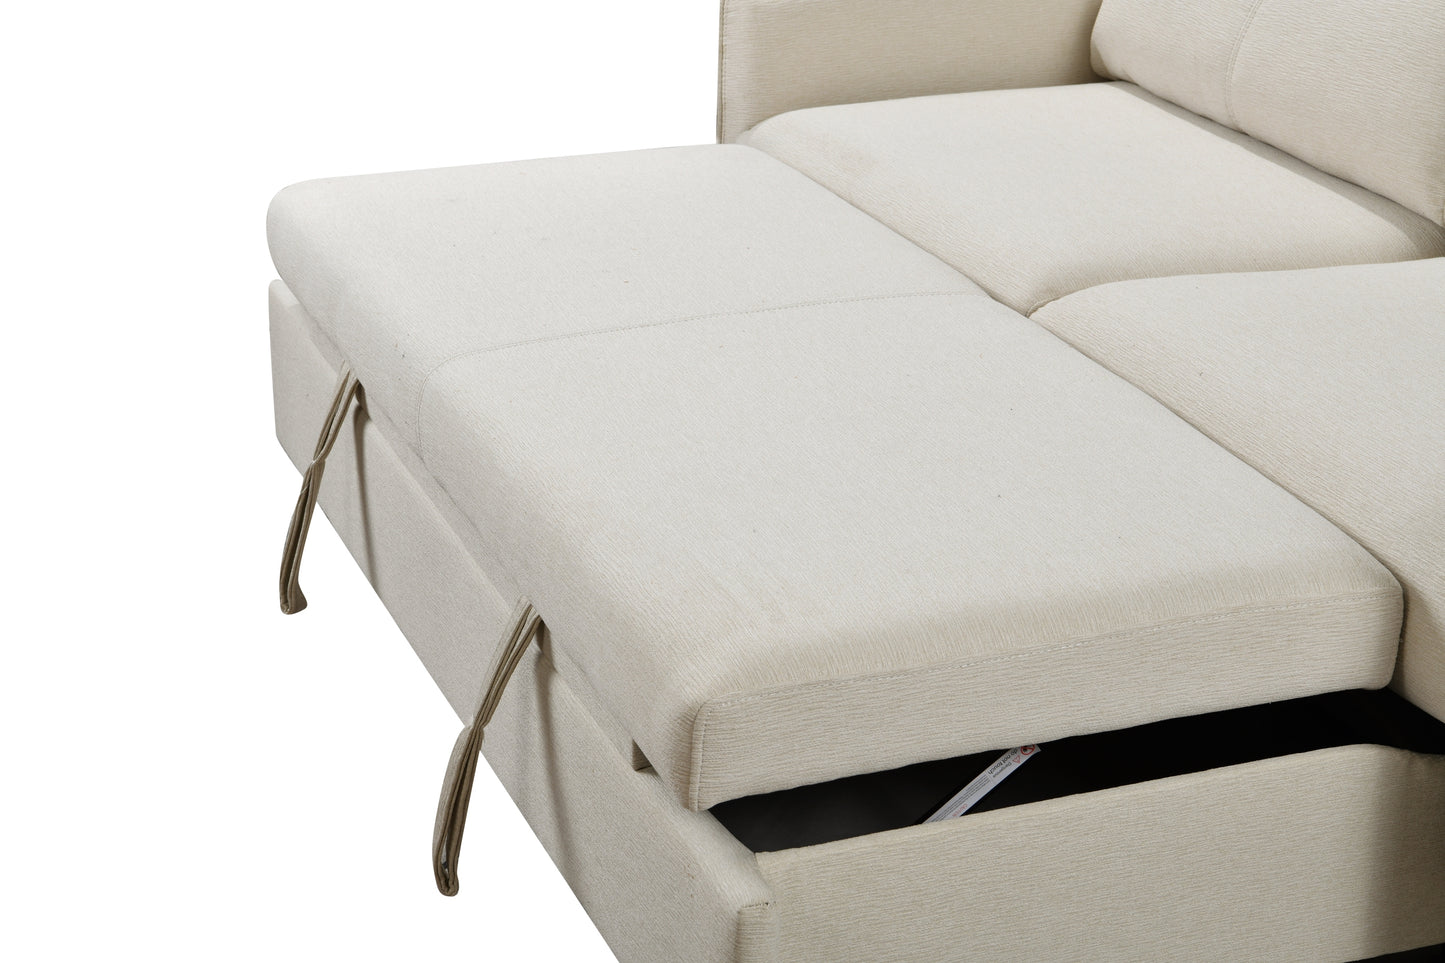 Lux Convertible Sofa sleeper in Beige